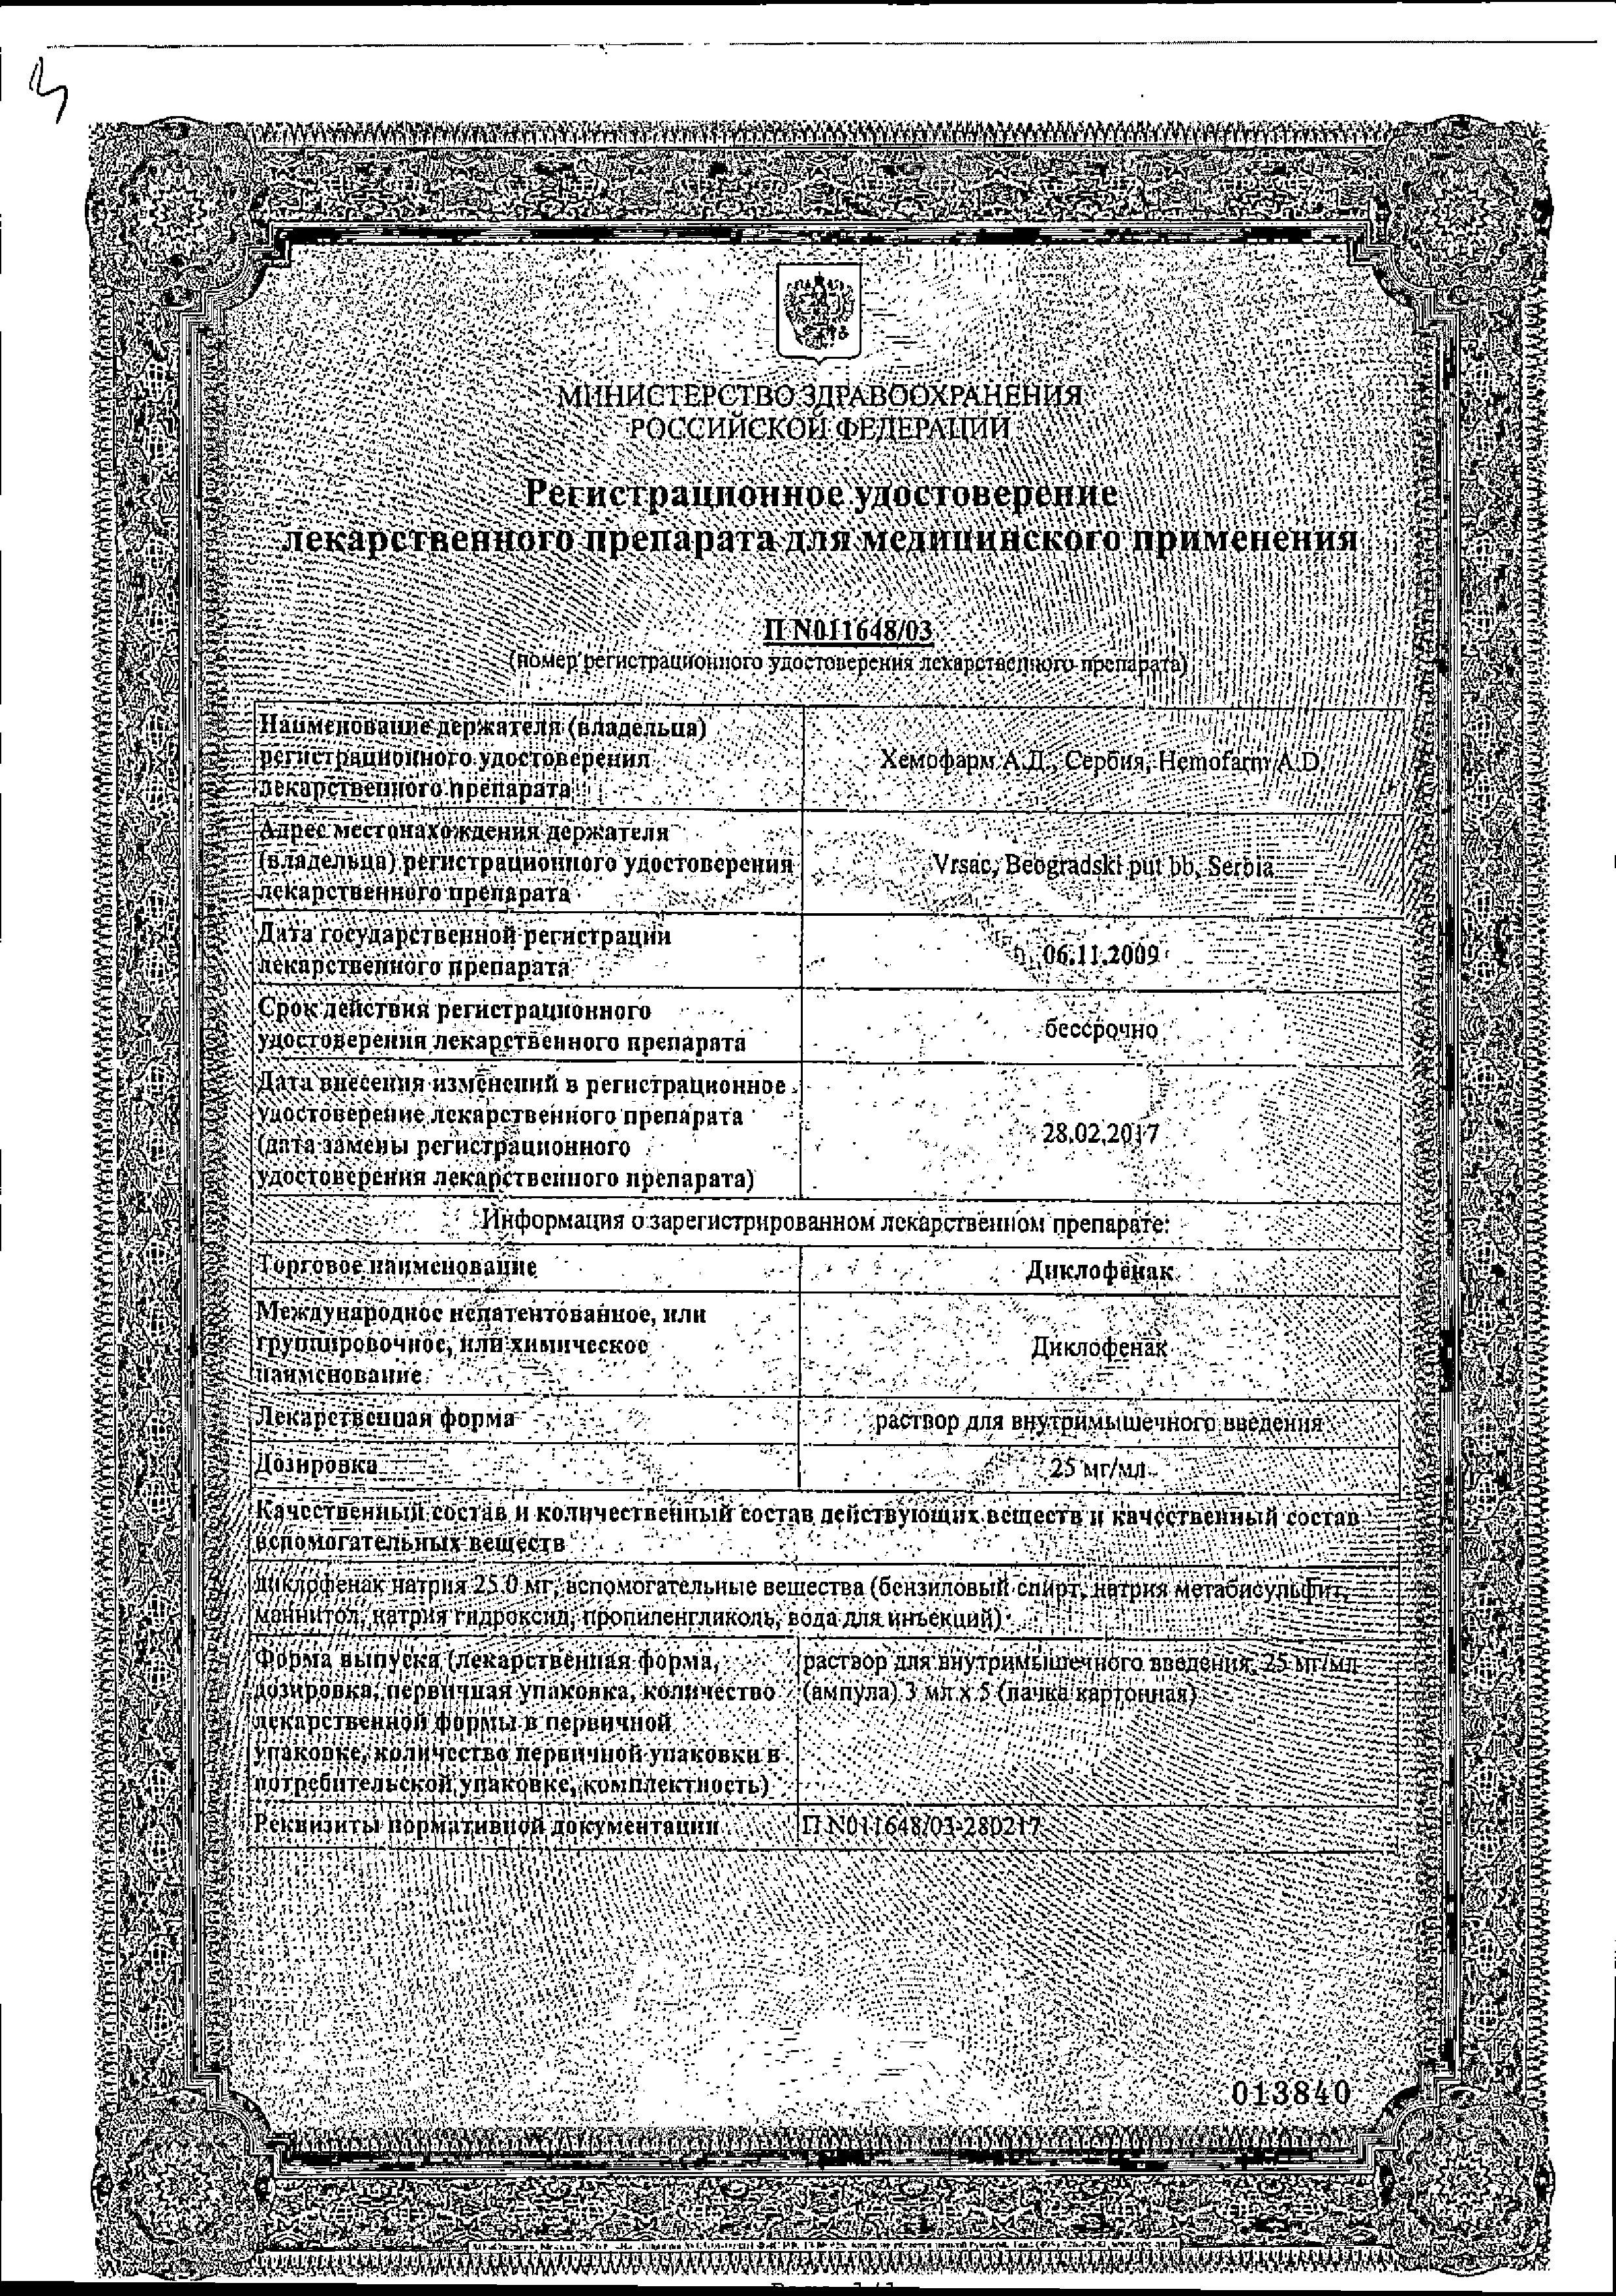 Диклофенак (для инъекций) сертификат